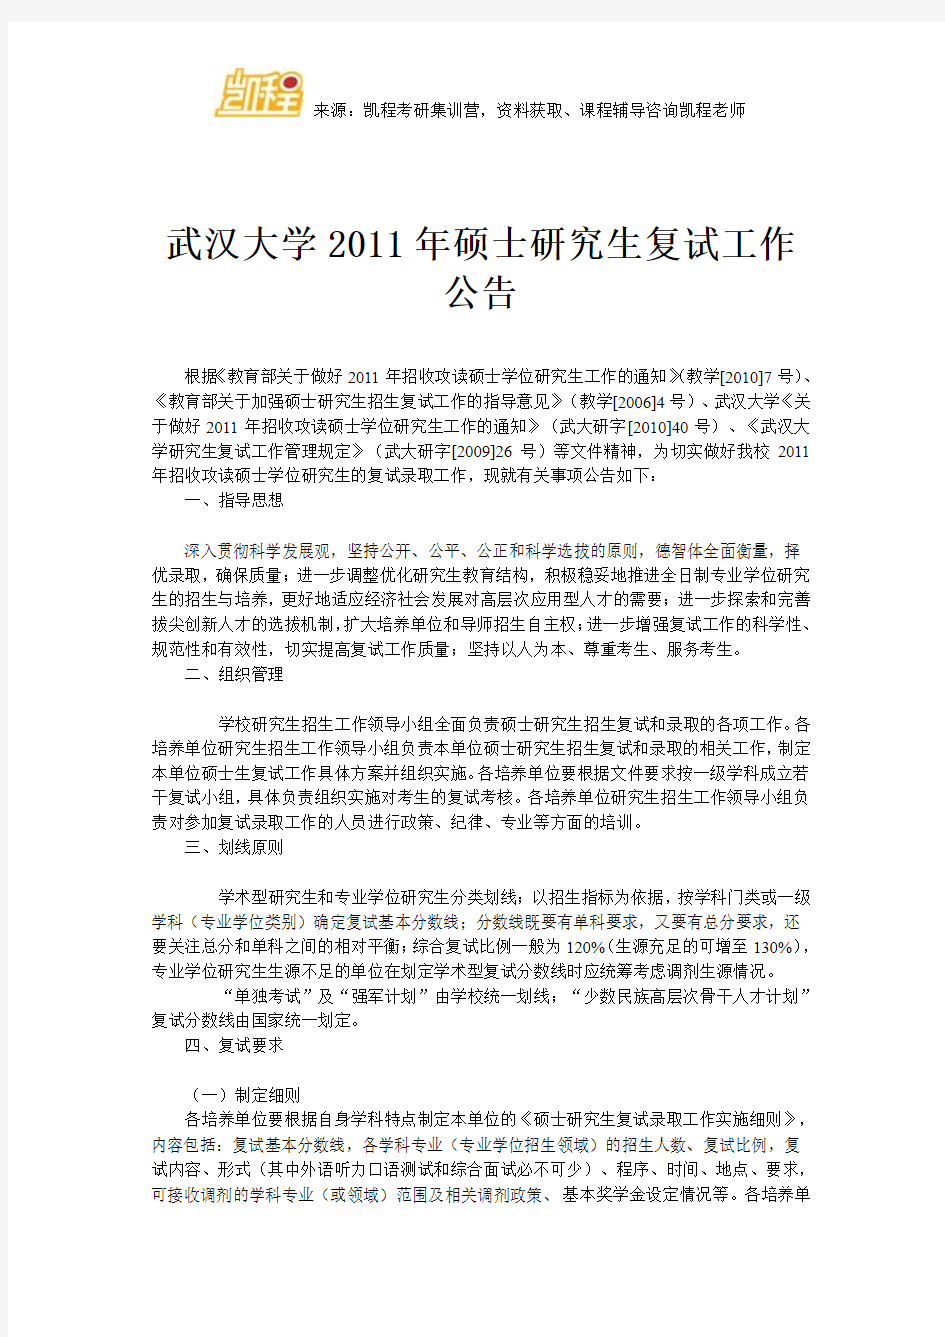 武汉大学2011年硕士研究生复试工作公告